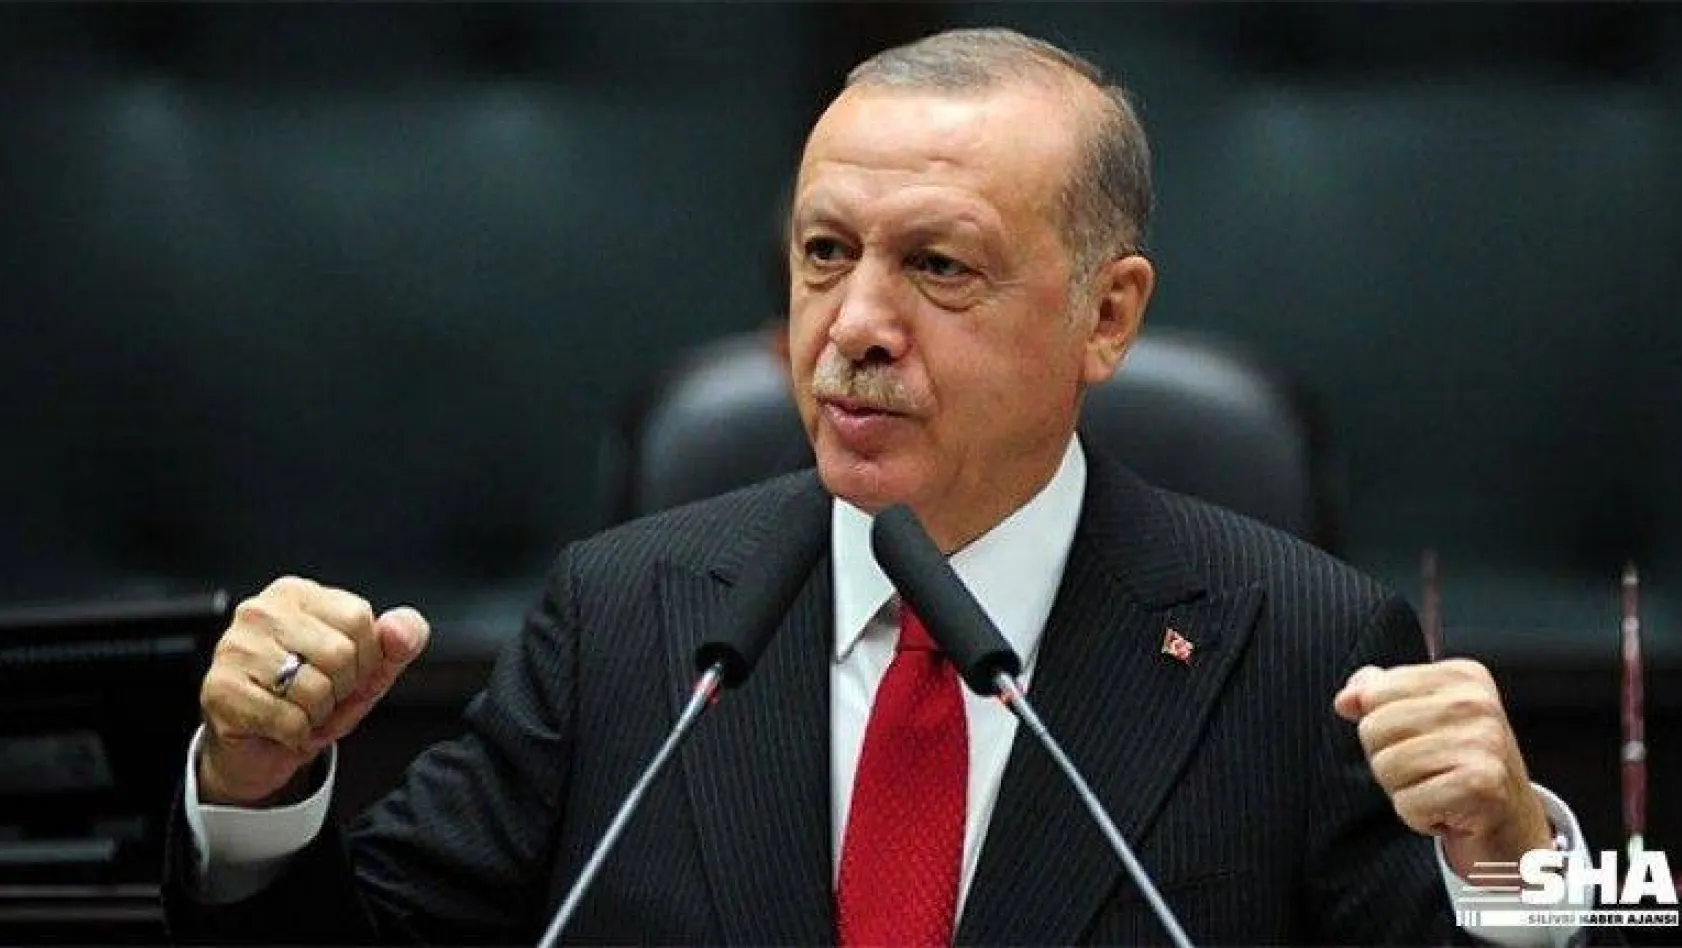 Cumhurbaşkanı Erdoğan 'Biz bize yeteriz' dedi! Türkiye kulak verdi